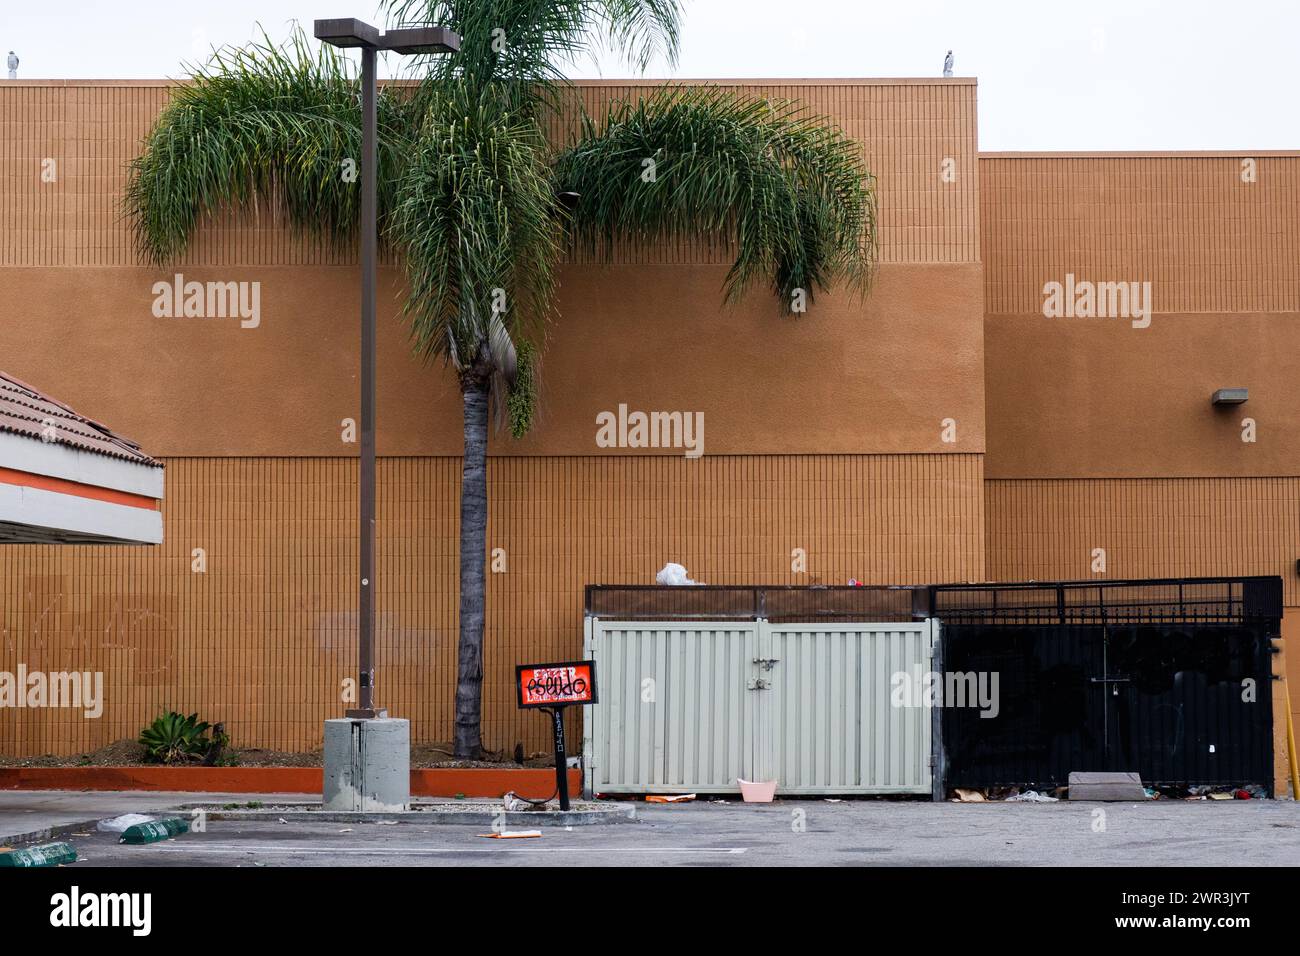 Palmiers et bennes à ordures, Los Angeles, Californie, États-Unis. Banque D'Images